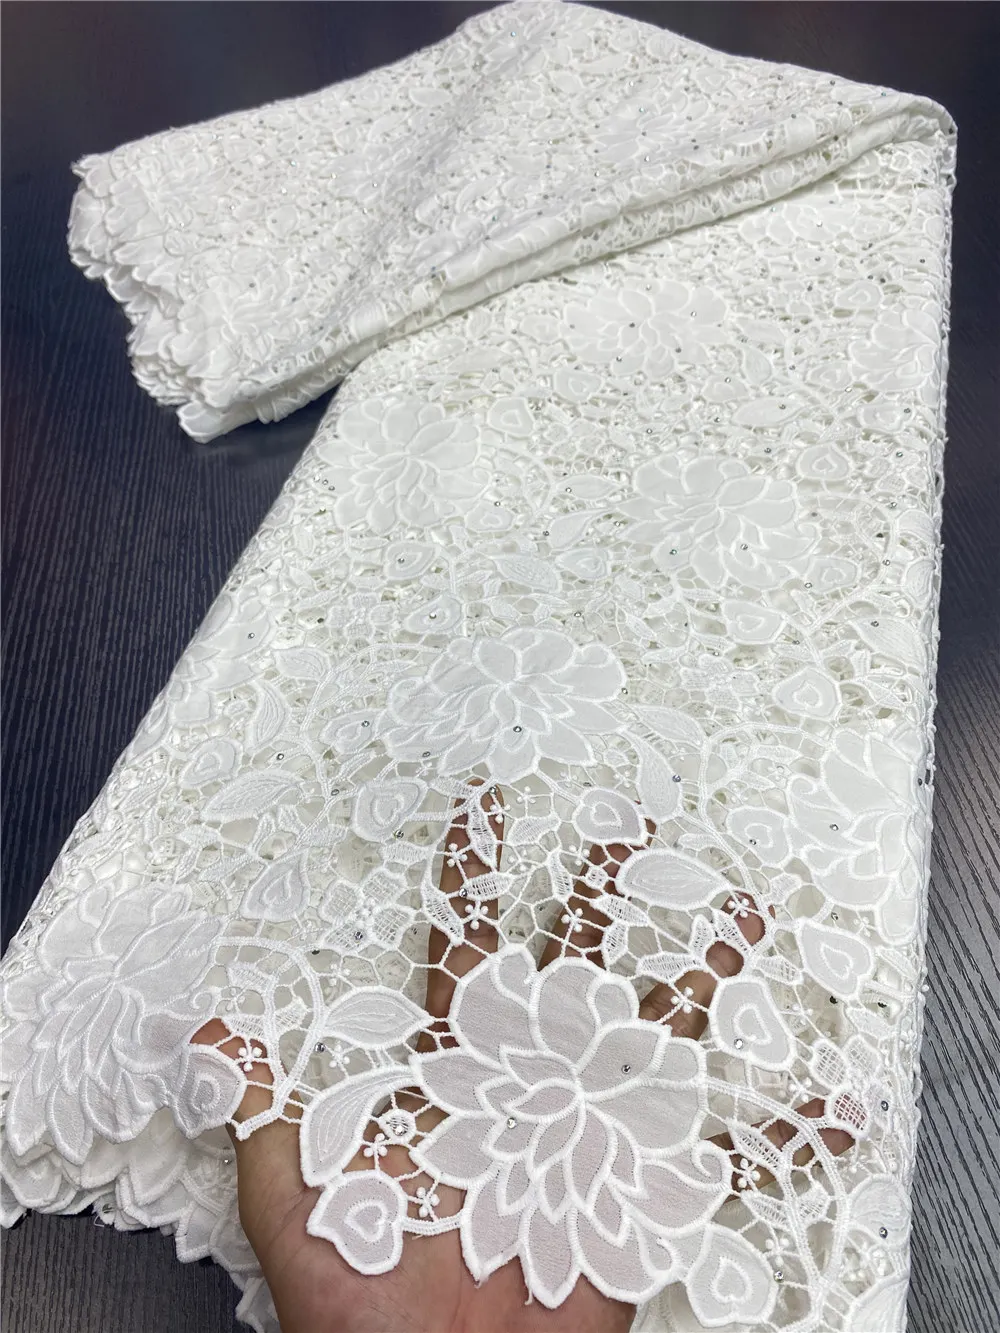 Afrikanske Lace Fabrics 2020 Høj Kvalitet Nigerianske Ledningen Guipure Lace Fabrics Bride Fransk Blonde Stof Til At Sy Kjole